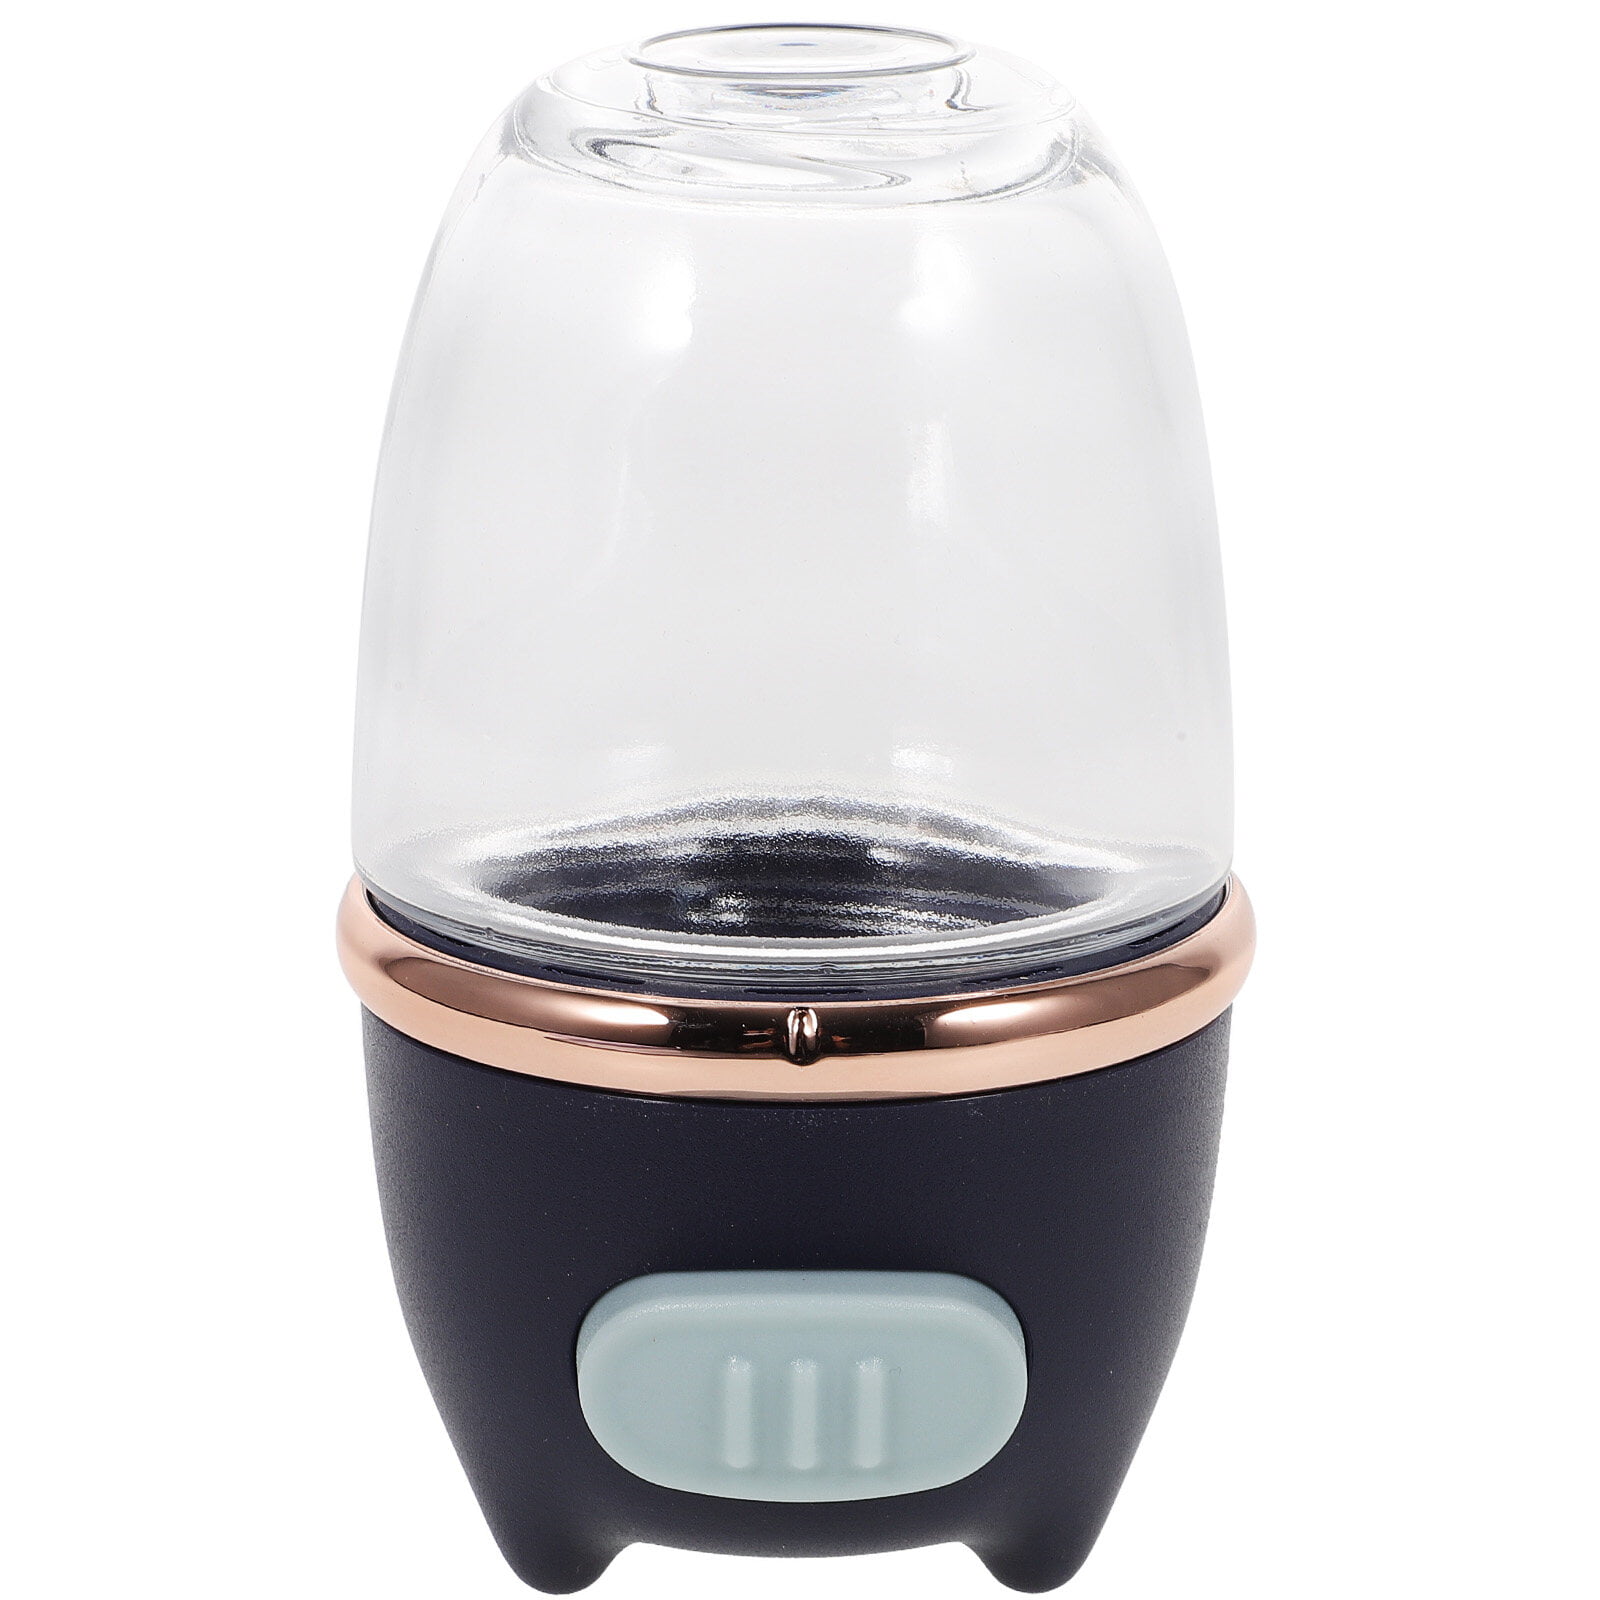 Glass Salt Shaker Dispenser, Precise Quantitative Seasoning Bottle, Press  Once to Accurately Sprinkle 0.5 Grams of Measuring Salt Shaker Suitable for